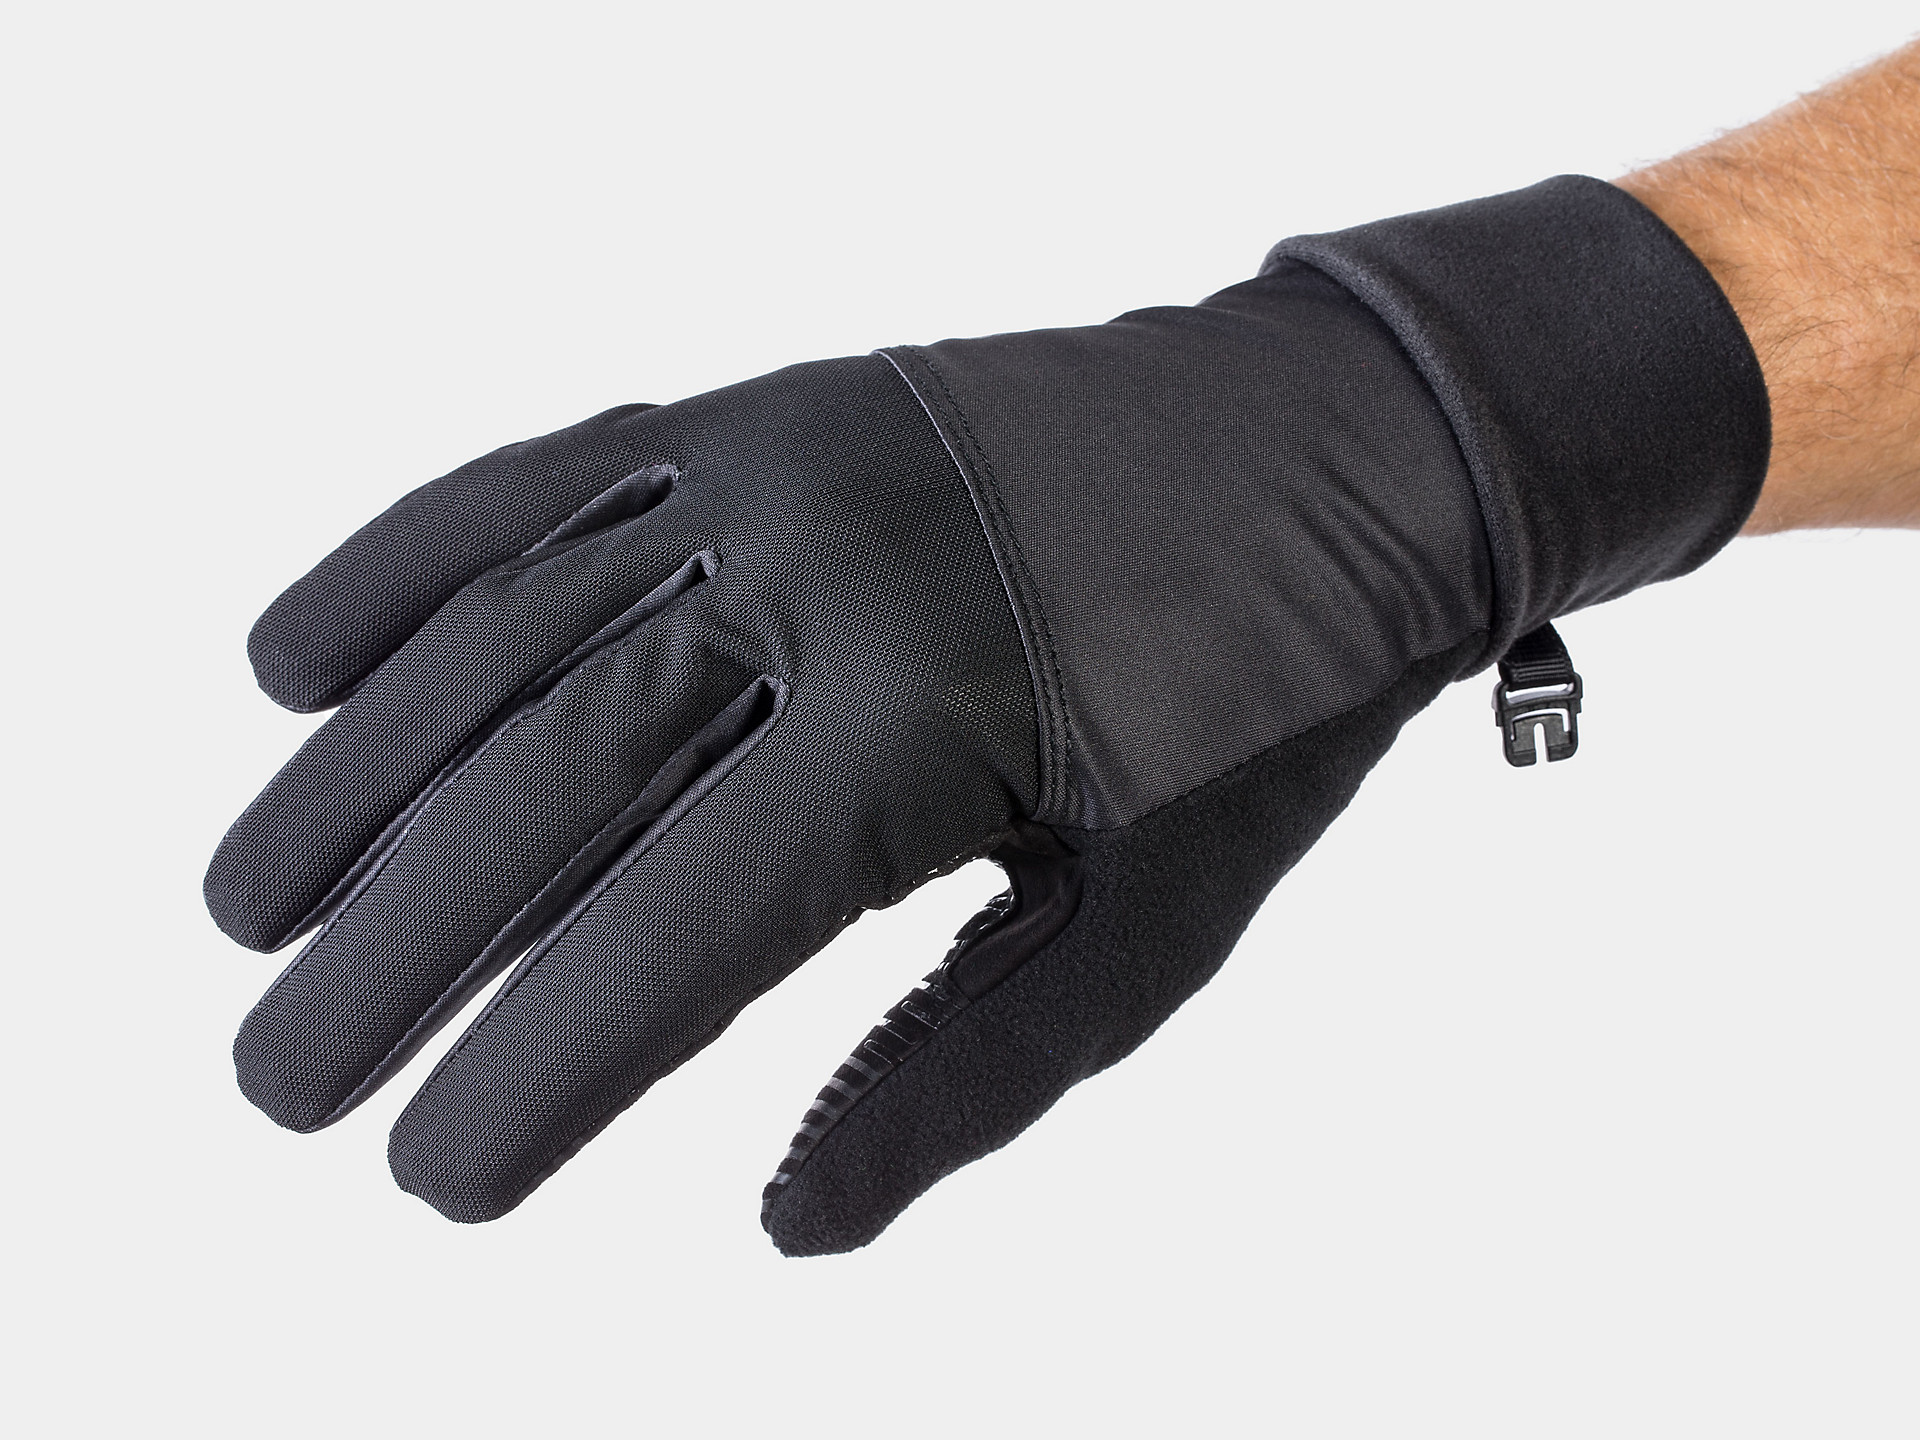 Bontrager Bontrager Winter Gloves Cycling Glove Size Large 